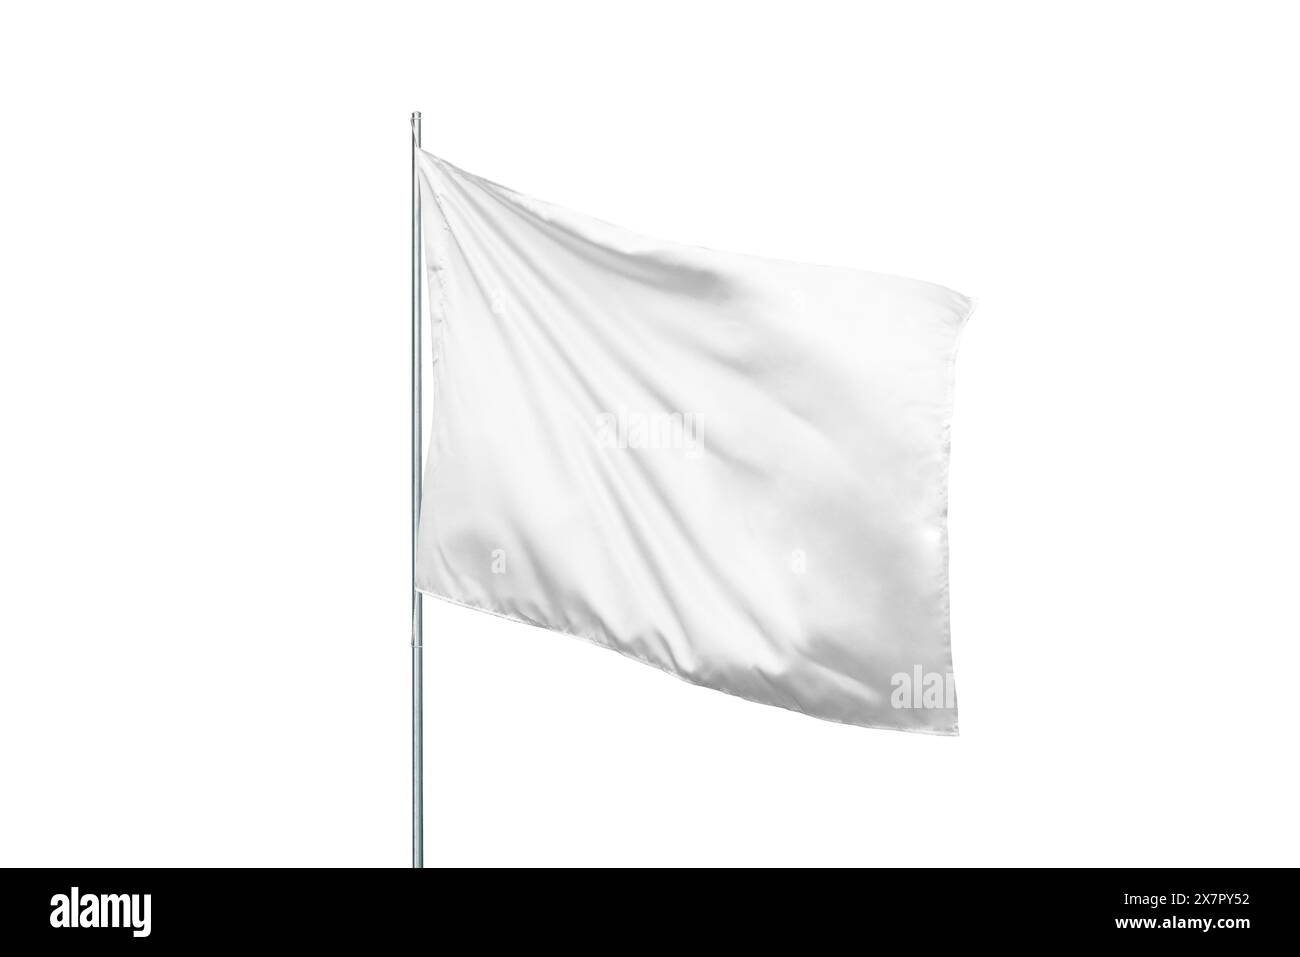 Isoliertes Modell der weißen Flagge im Wind, perfekt für nationale Flaggen- oder Designpräsentationen und Werbung mit einer sauberen, leeren Oberfläche Stockfoto